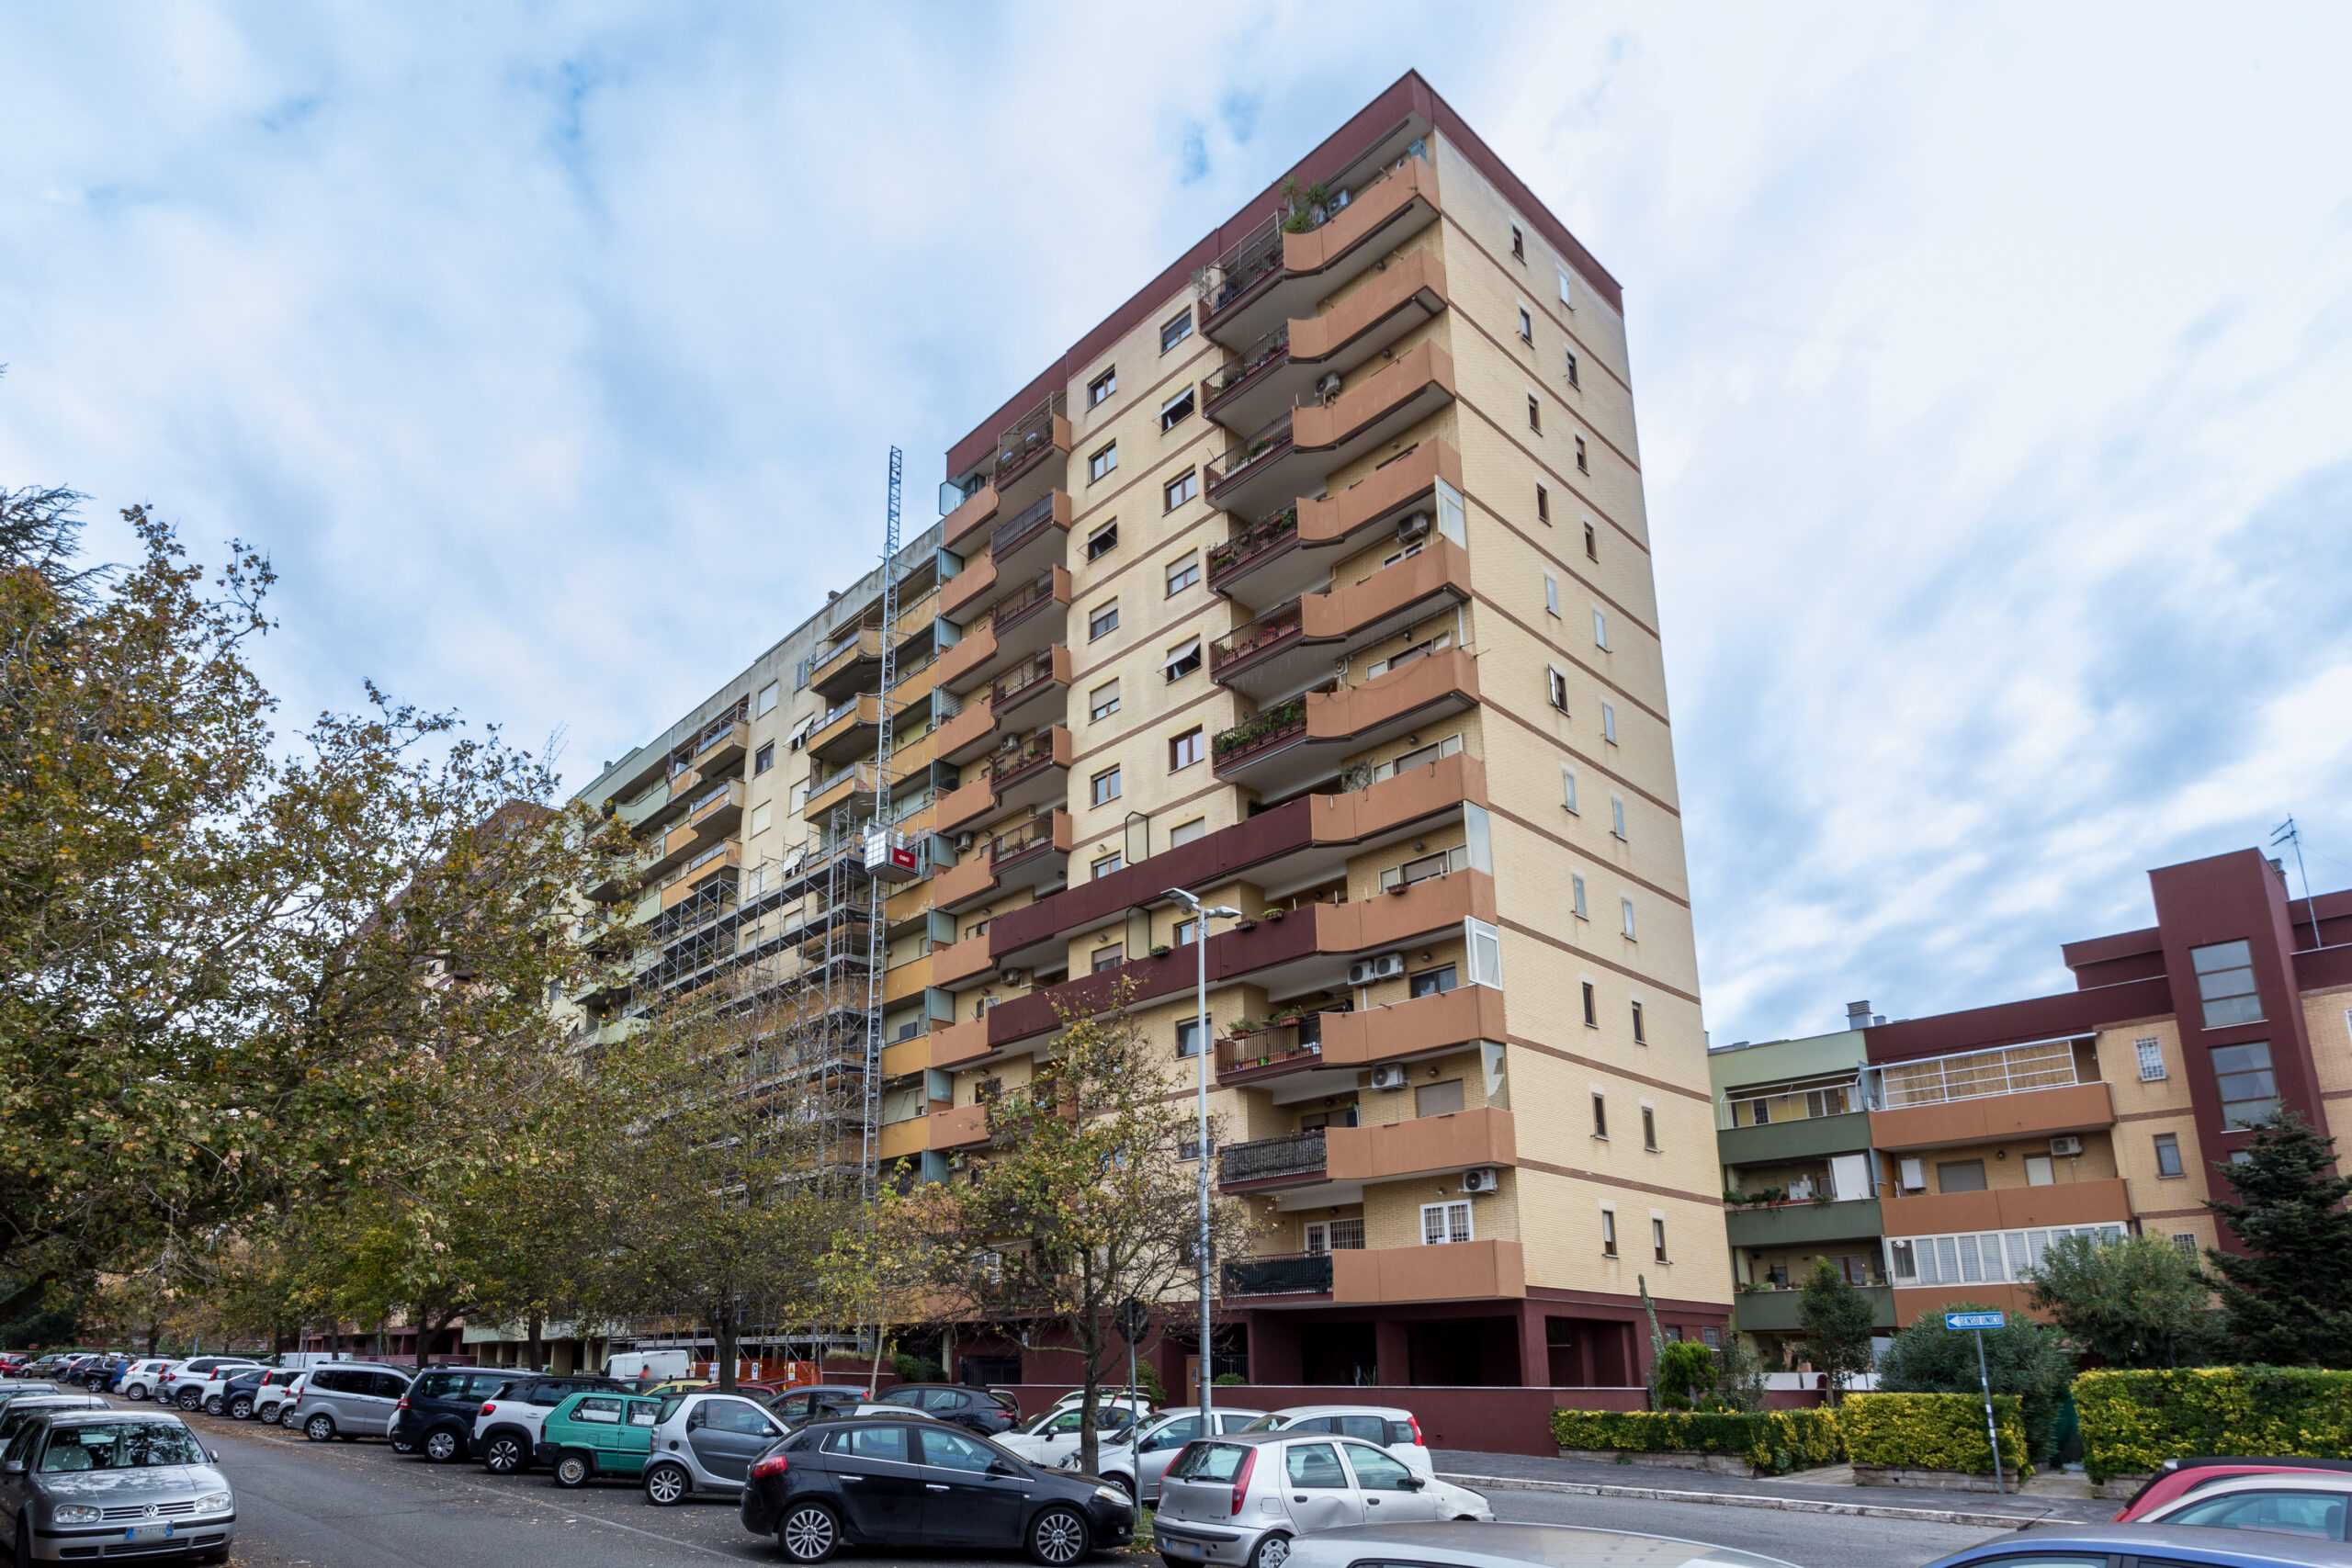 SPINACETO – TOR DE CENCI – Appartamento ampia metratura RISTRUTTURATO con balconi, cantina e posto auto